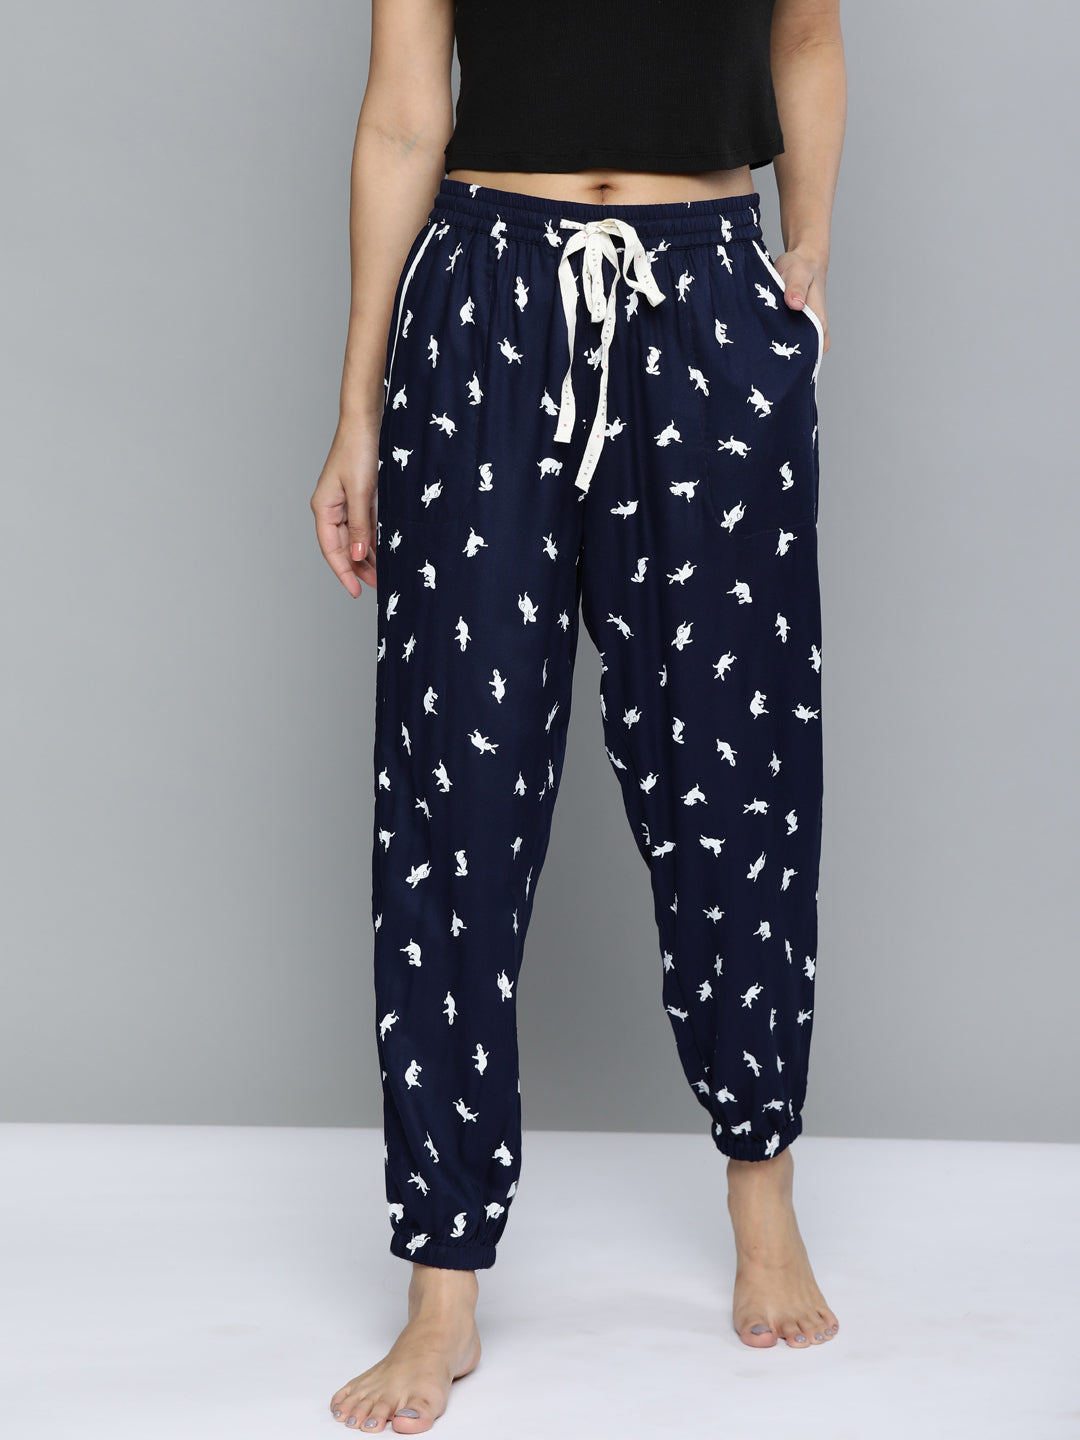 Printed Pyjama